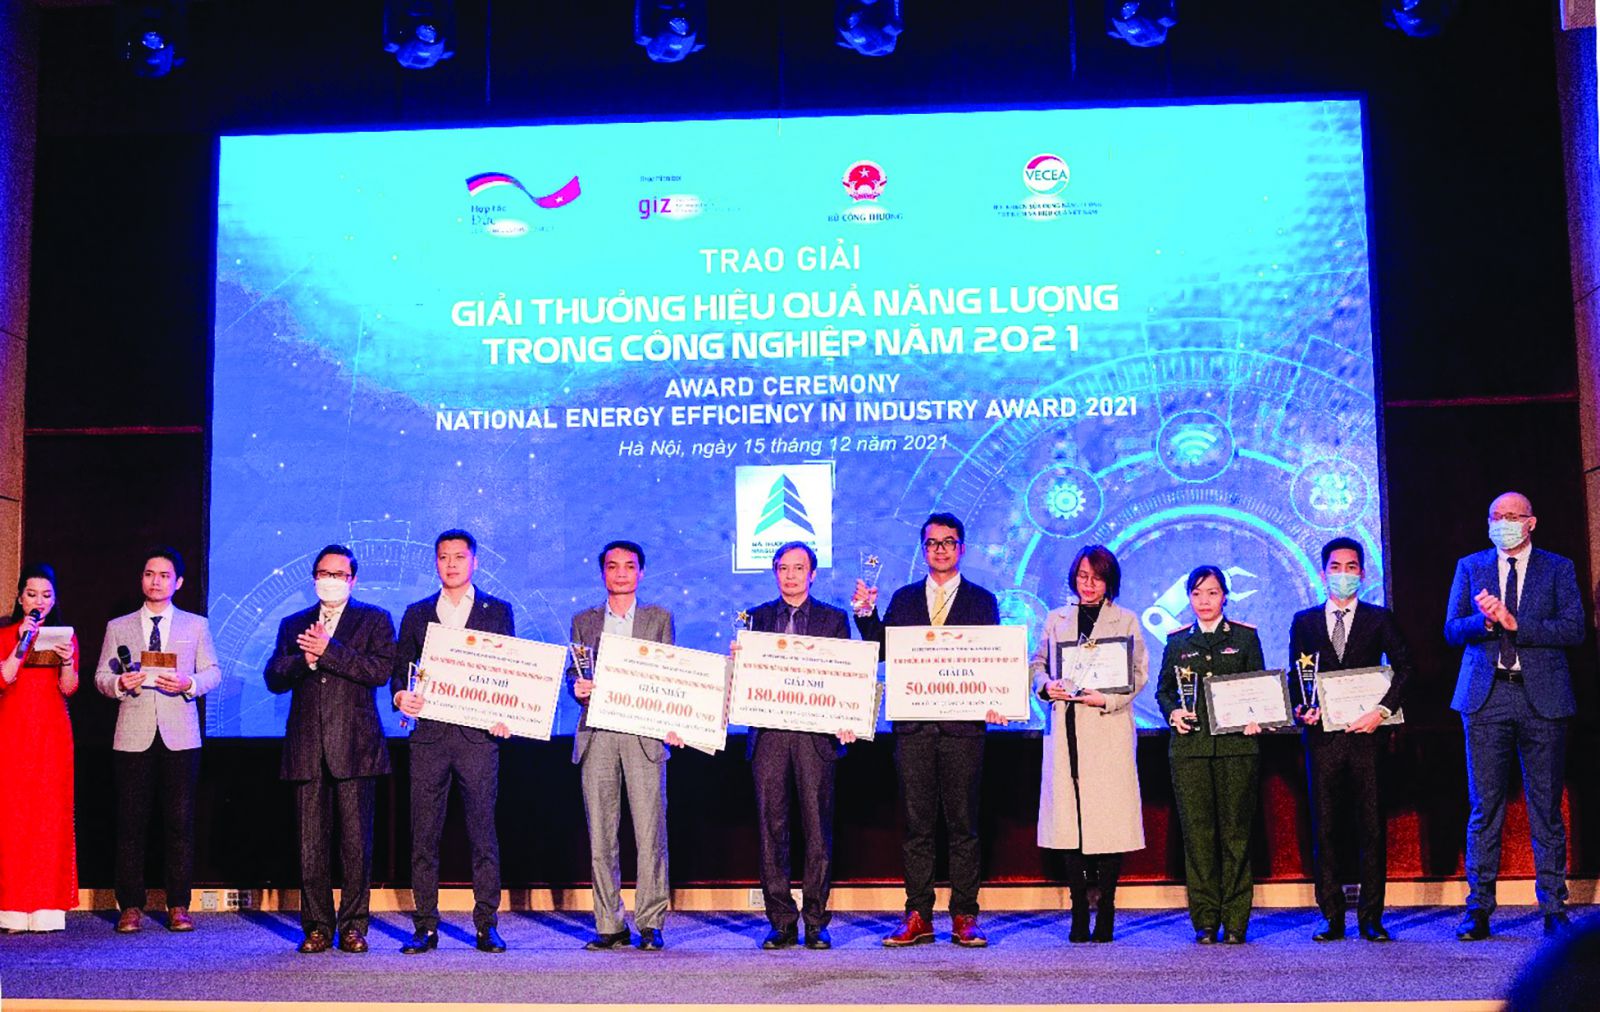  Ông Sakchai Chatchaisophon– Giám đốc nhà máy chế biến sản phẩm thịt Hà Nội nhận giải thưởng của chương trình (Người đứng thứ 5 từ bên trái sang)